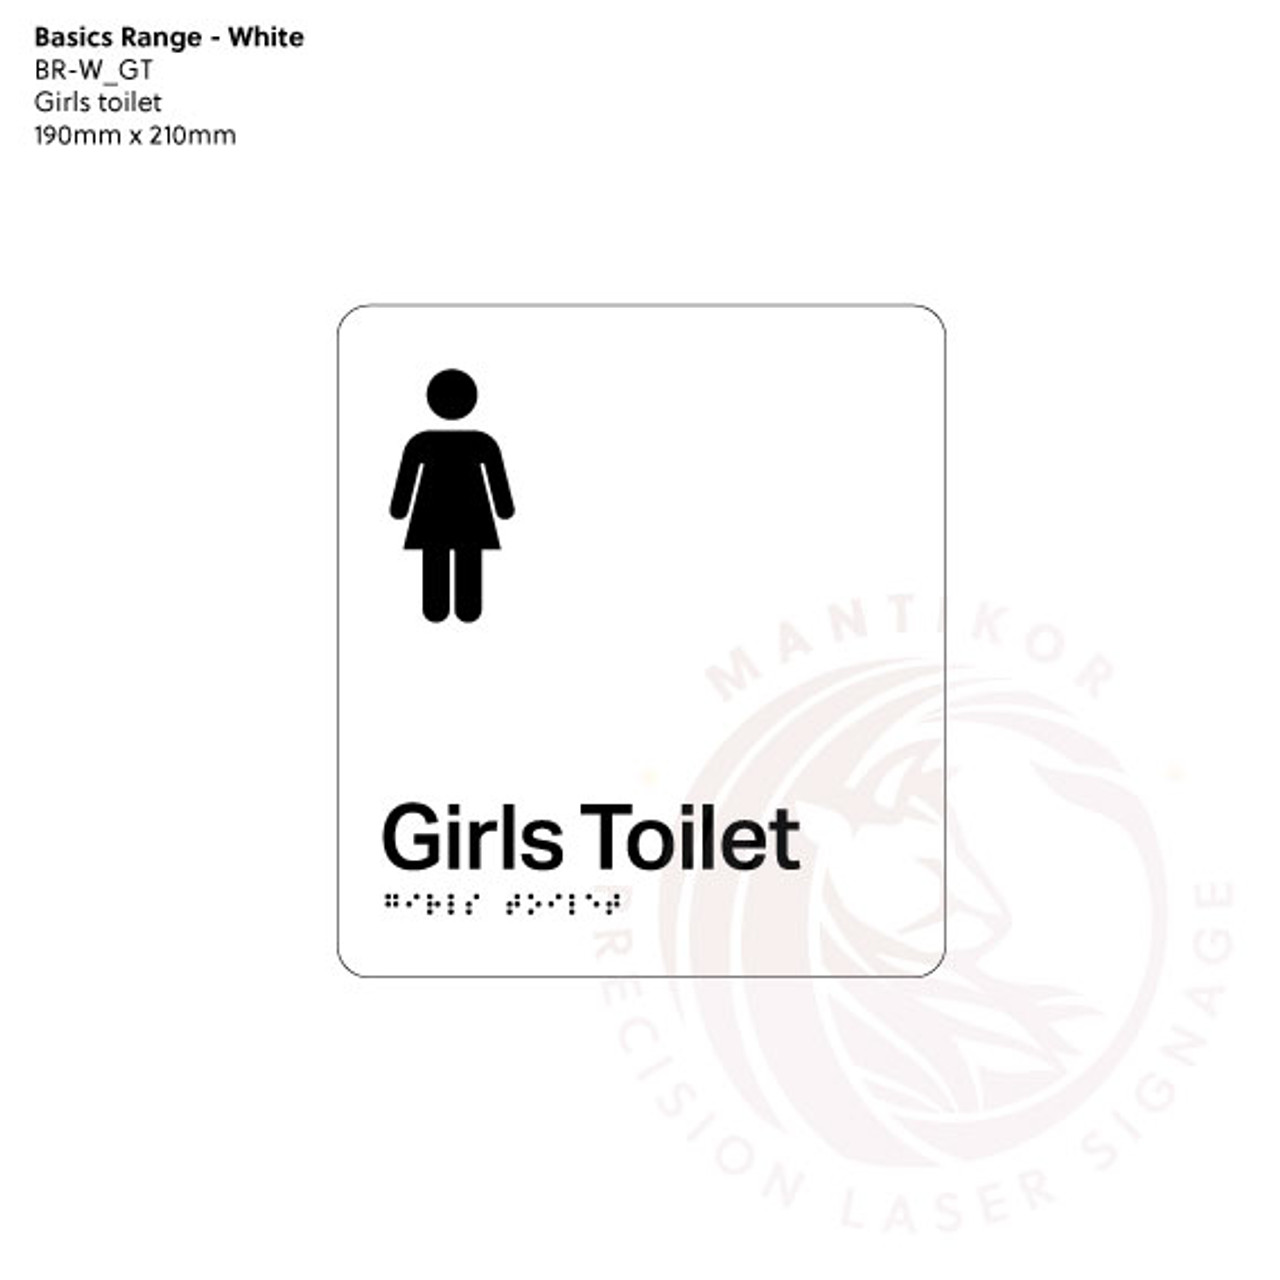 Basics Range - White Braille Signs - Girls Toilet